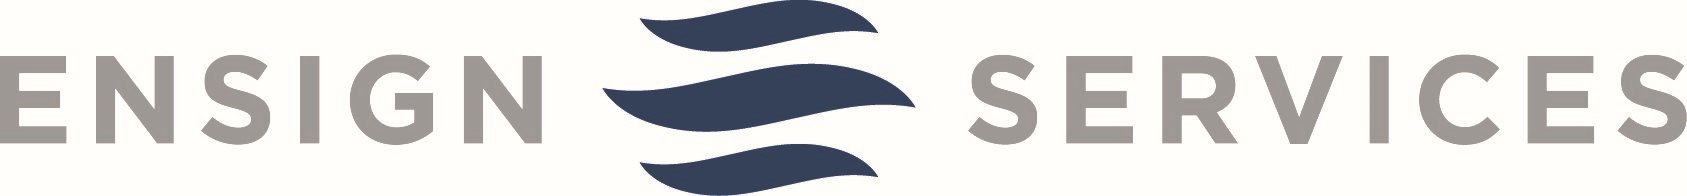 Ensign Services Company Logo